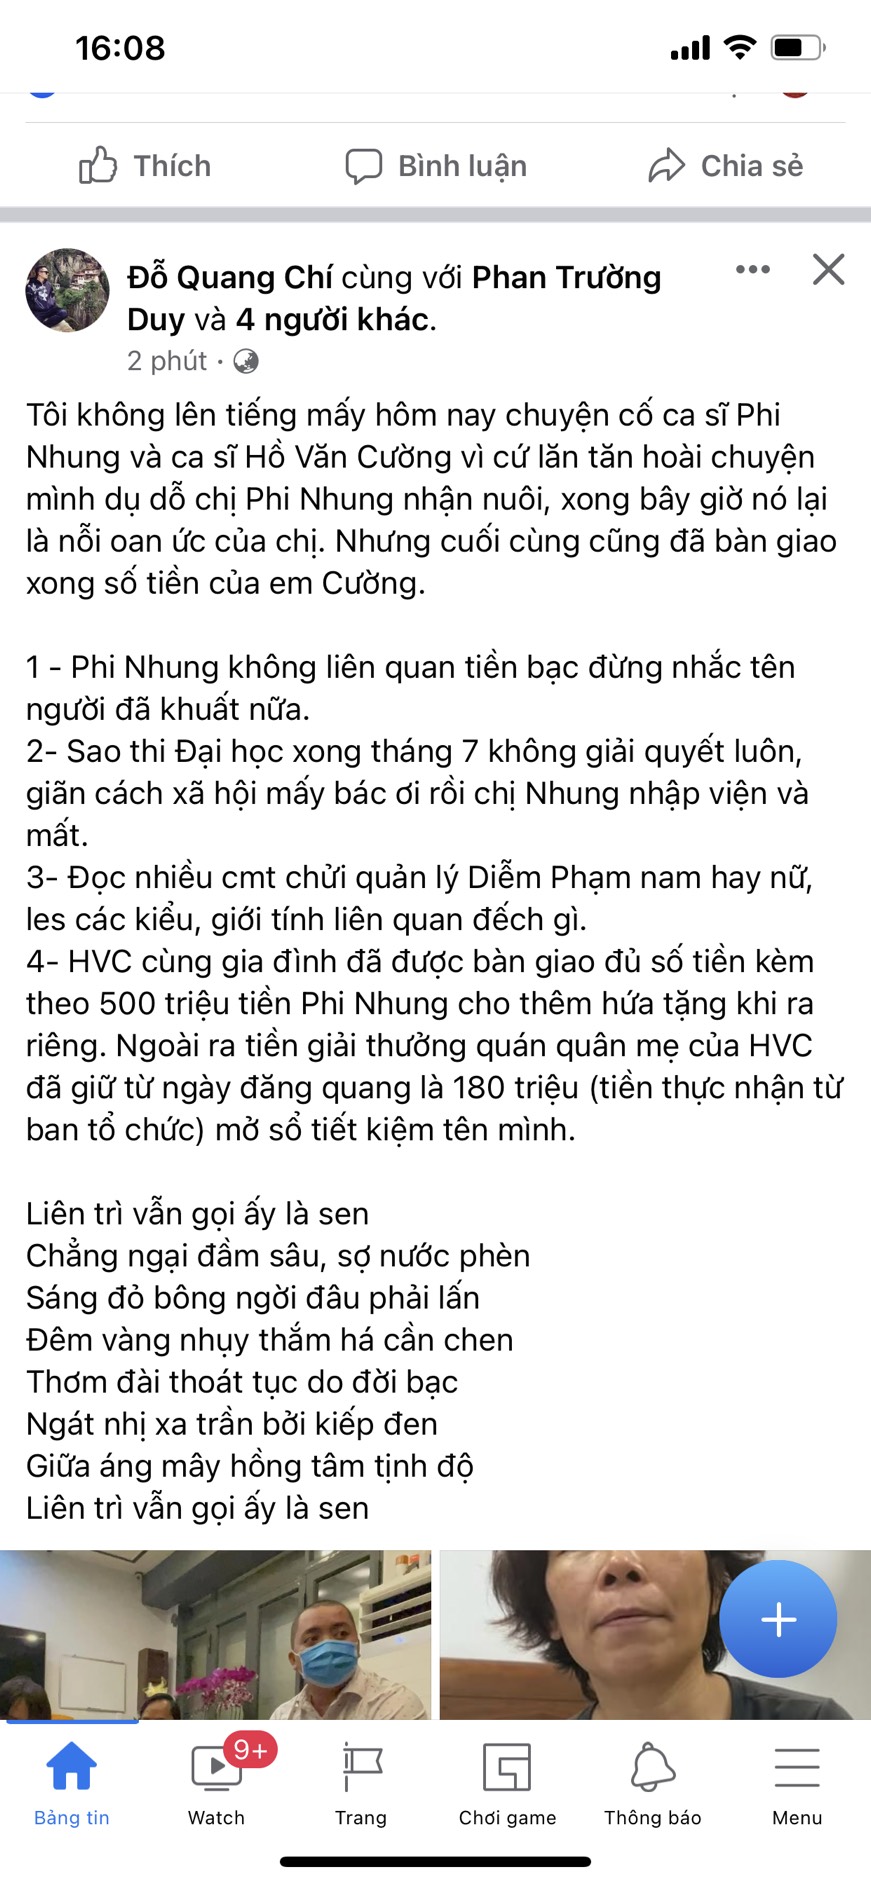 Bài viết của thành viên trong ê kíp của ca sĩ Phi Nhung đăng tải cách đây ít phút